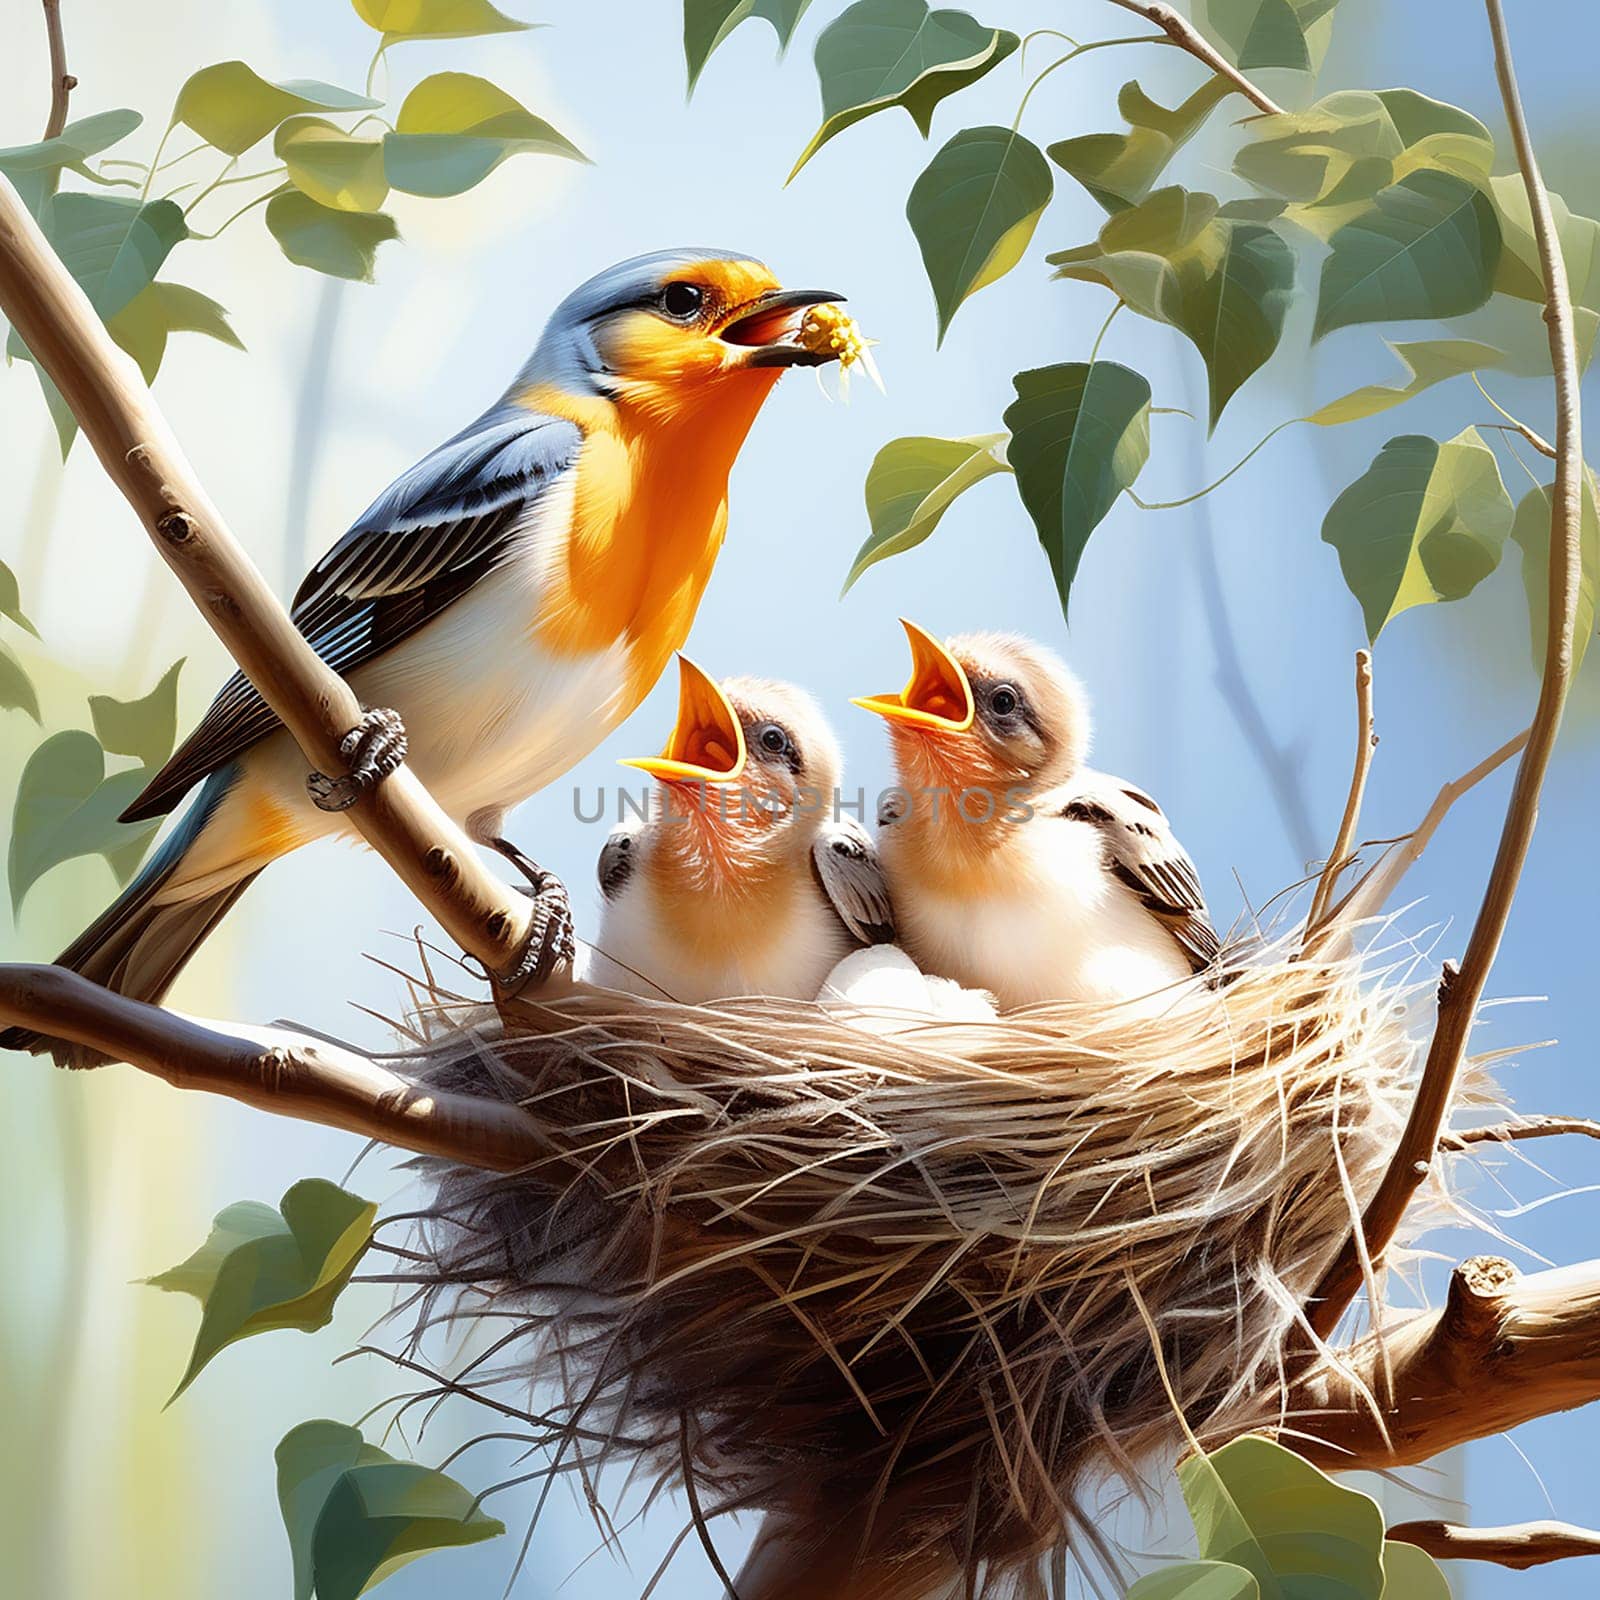 Nature's Nurturers: Birds Feeding Baby in Nest by Petrichor